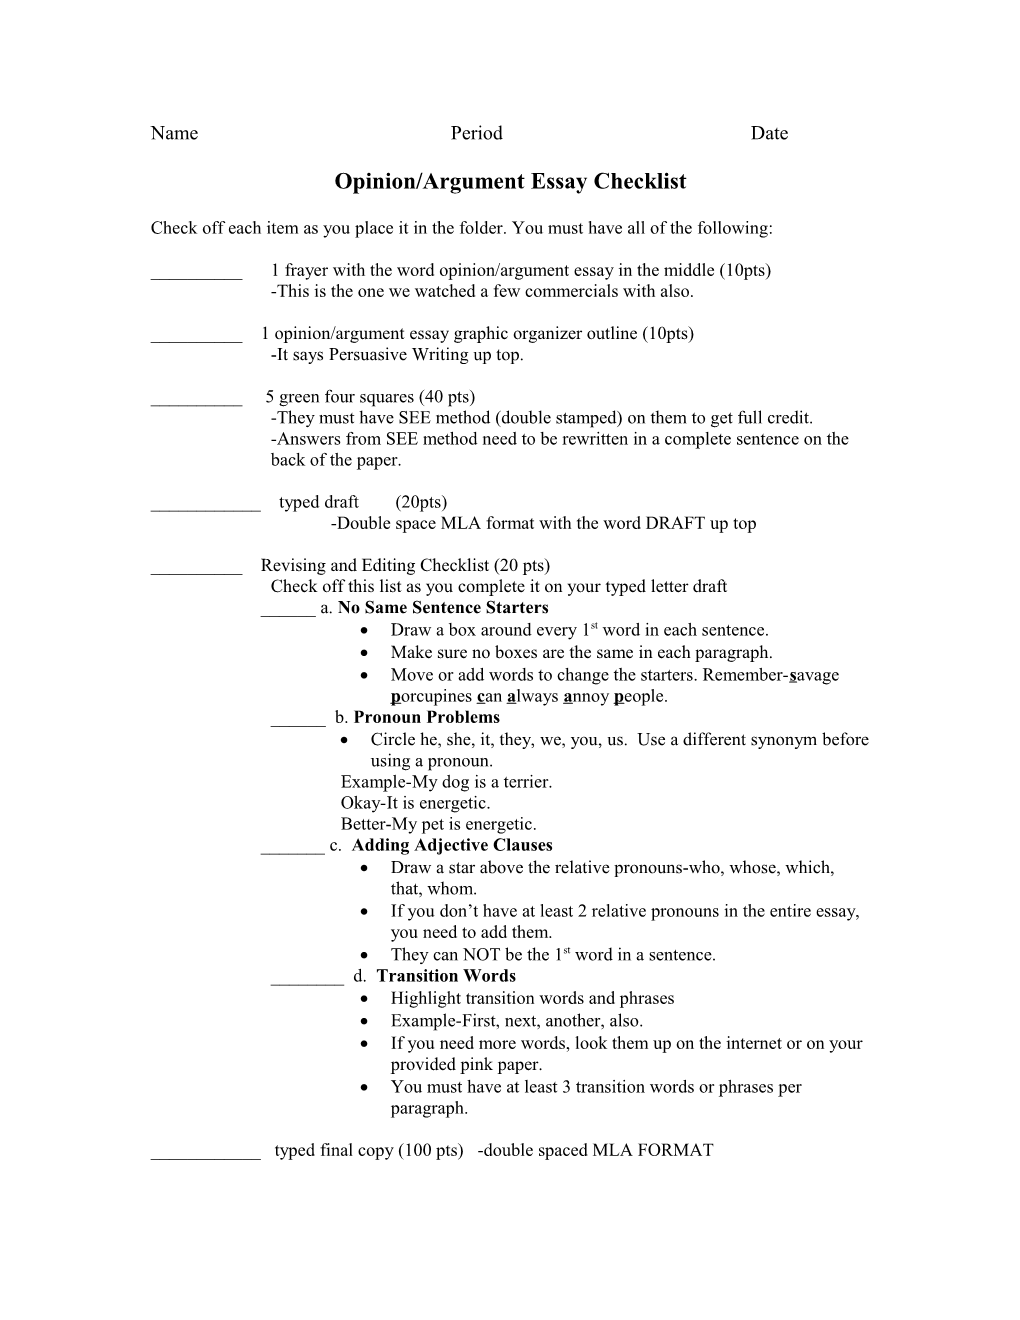 Opinion/Argument Essay Checklist